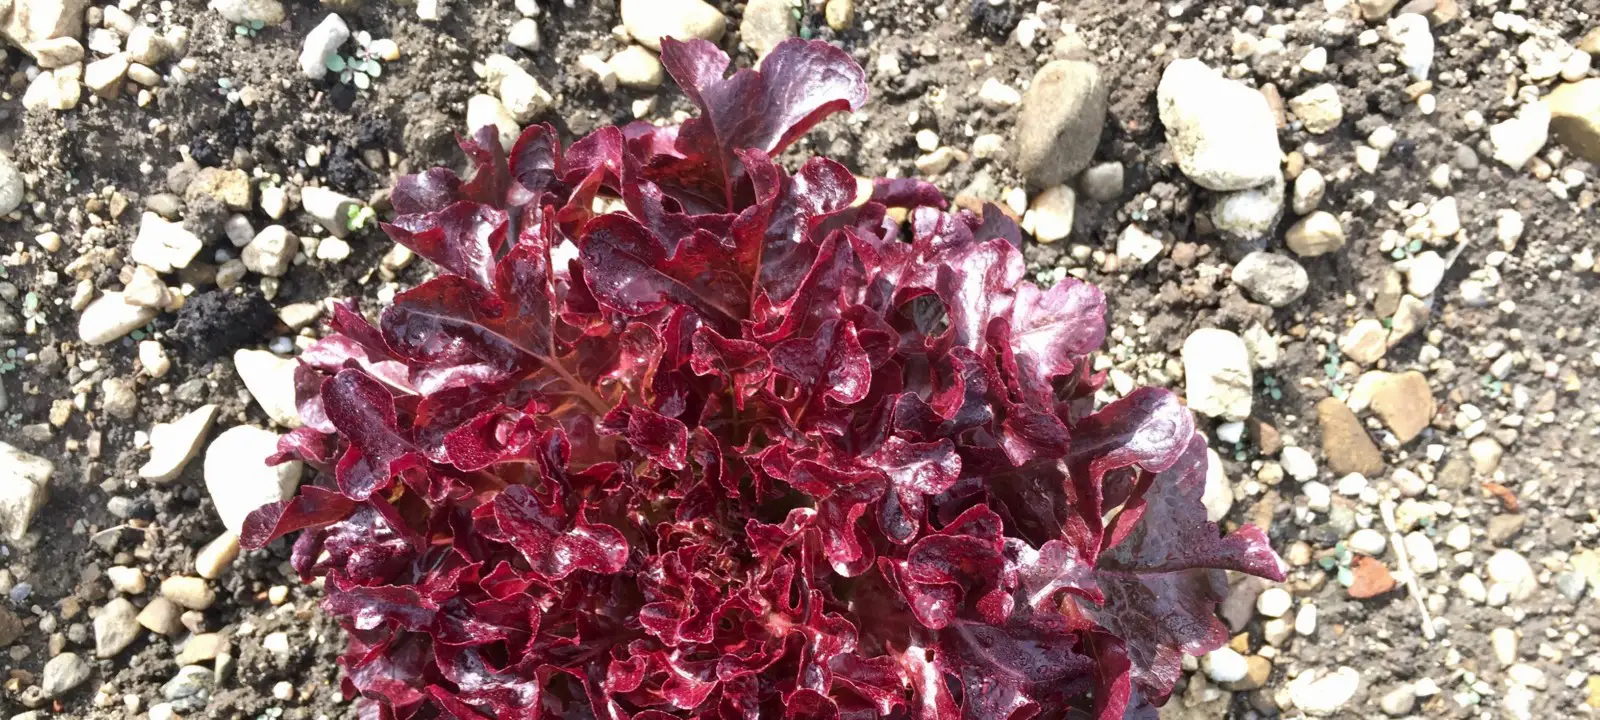 Salat Lollo rosso mit Bitterstoffen